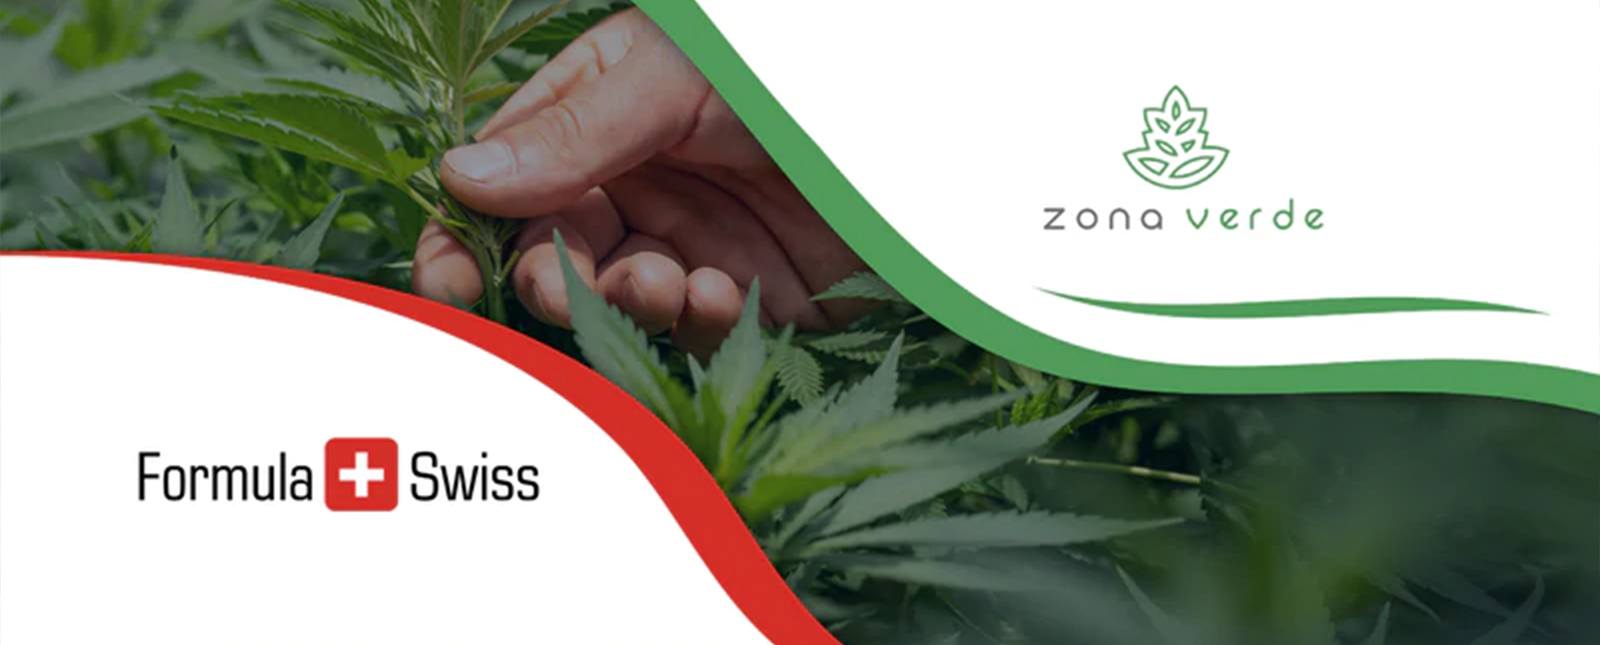 Formula Swiss s'associe avec le principal détaillant de cannabis en Roumanie.